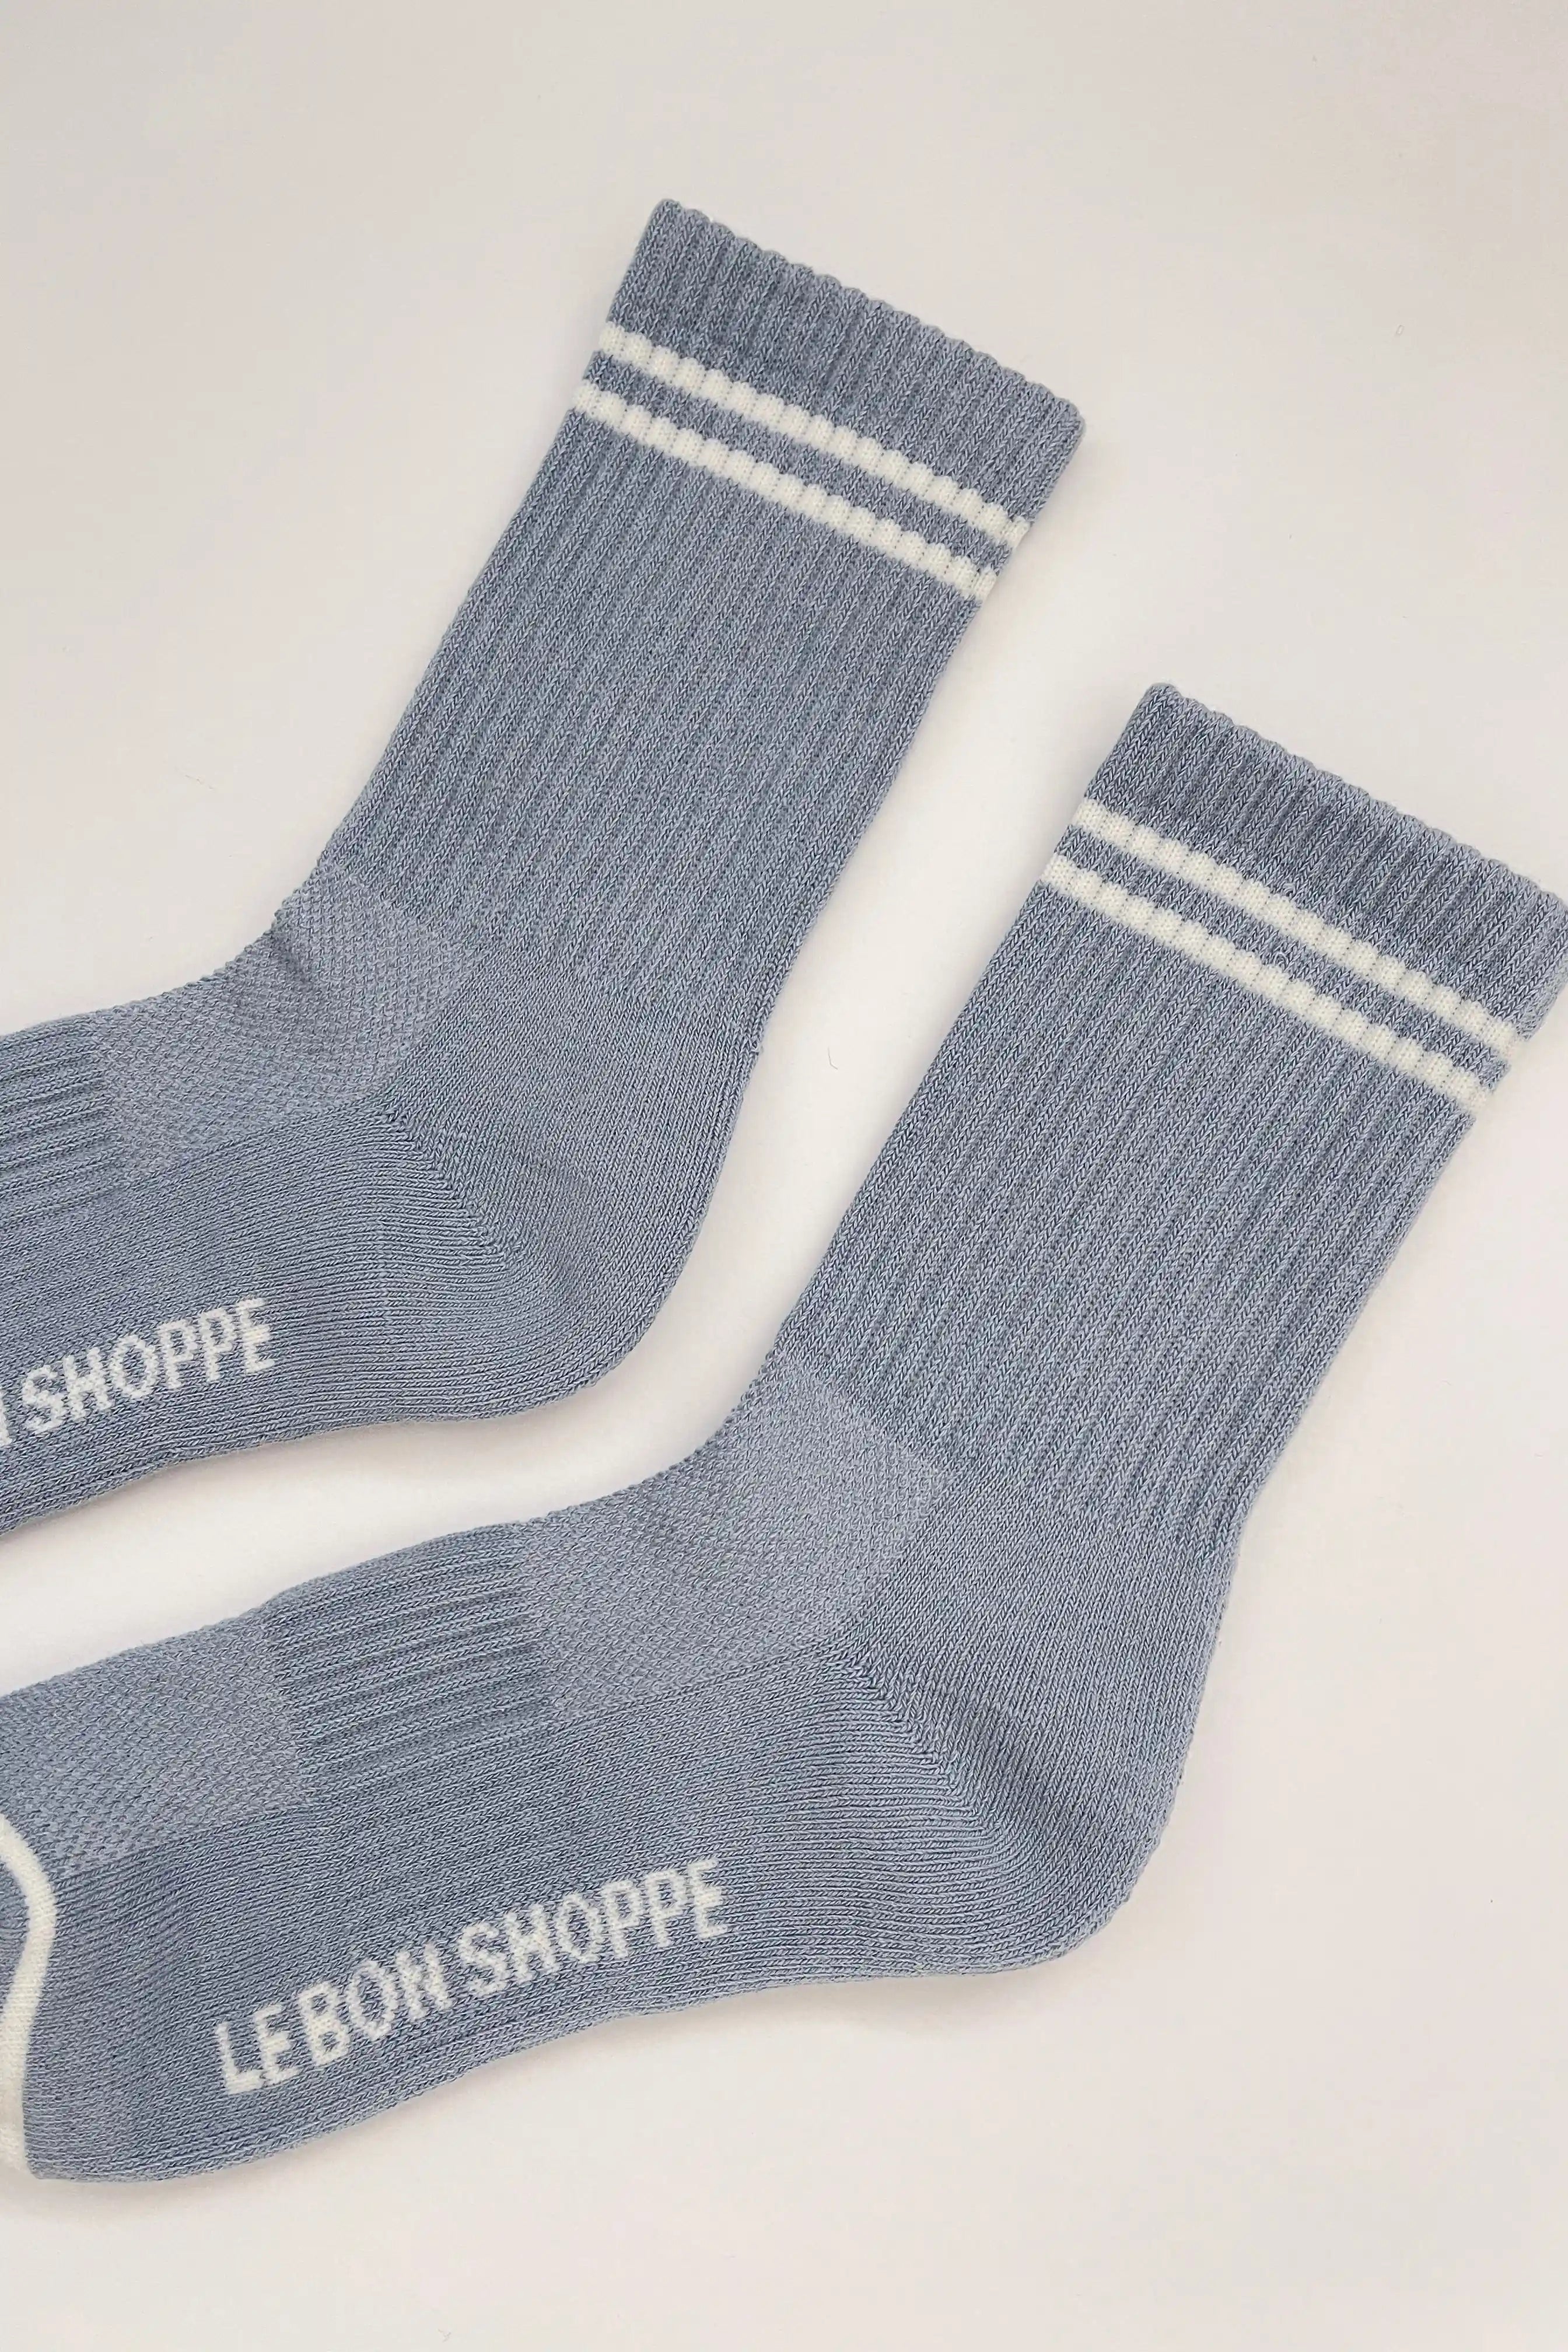 Boyfriend Socks | Blue Grey | by Le Bon Shoppe - Lifestory - Le Bon Shoppe